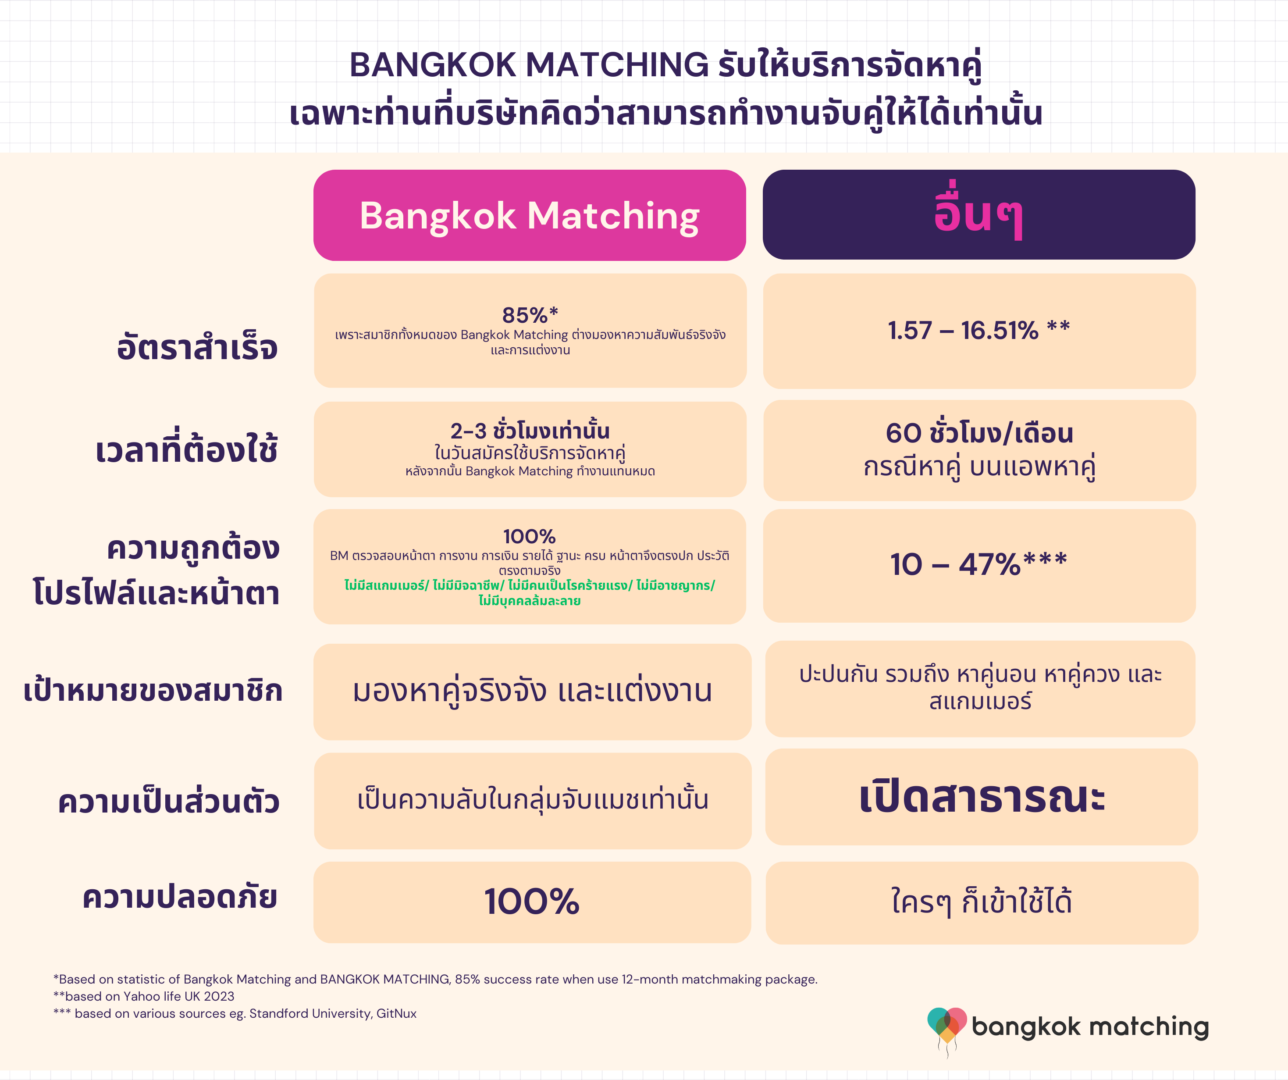 ทำไมควรใช้บริษัทจัดหาคู่ Bangkok Matching Dating App หรือบริษัทจัดหาคู่ 5 เหตุผลที่บริษัทจัดหาคู่ยังเป็นที่นิยม ในยุค Online Dating App แอพหาคู่สะพัด